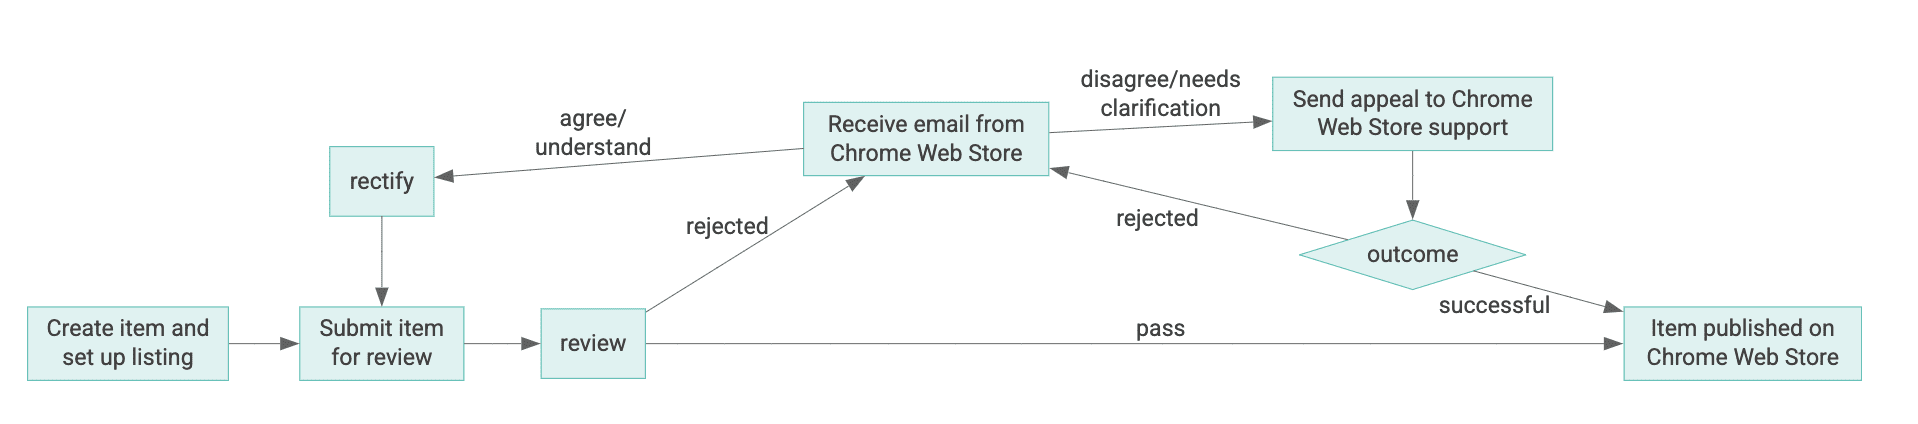 نمودار چرخه عمر یک مورد فروشگاه وب Chrome